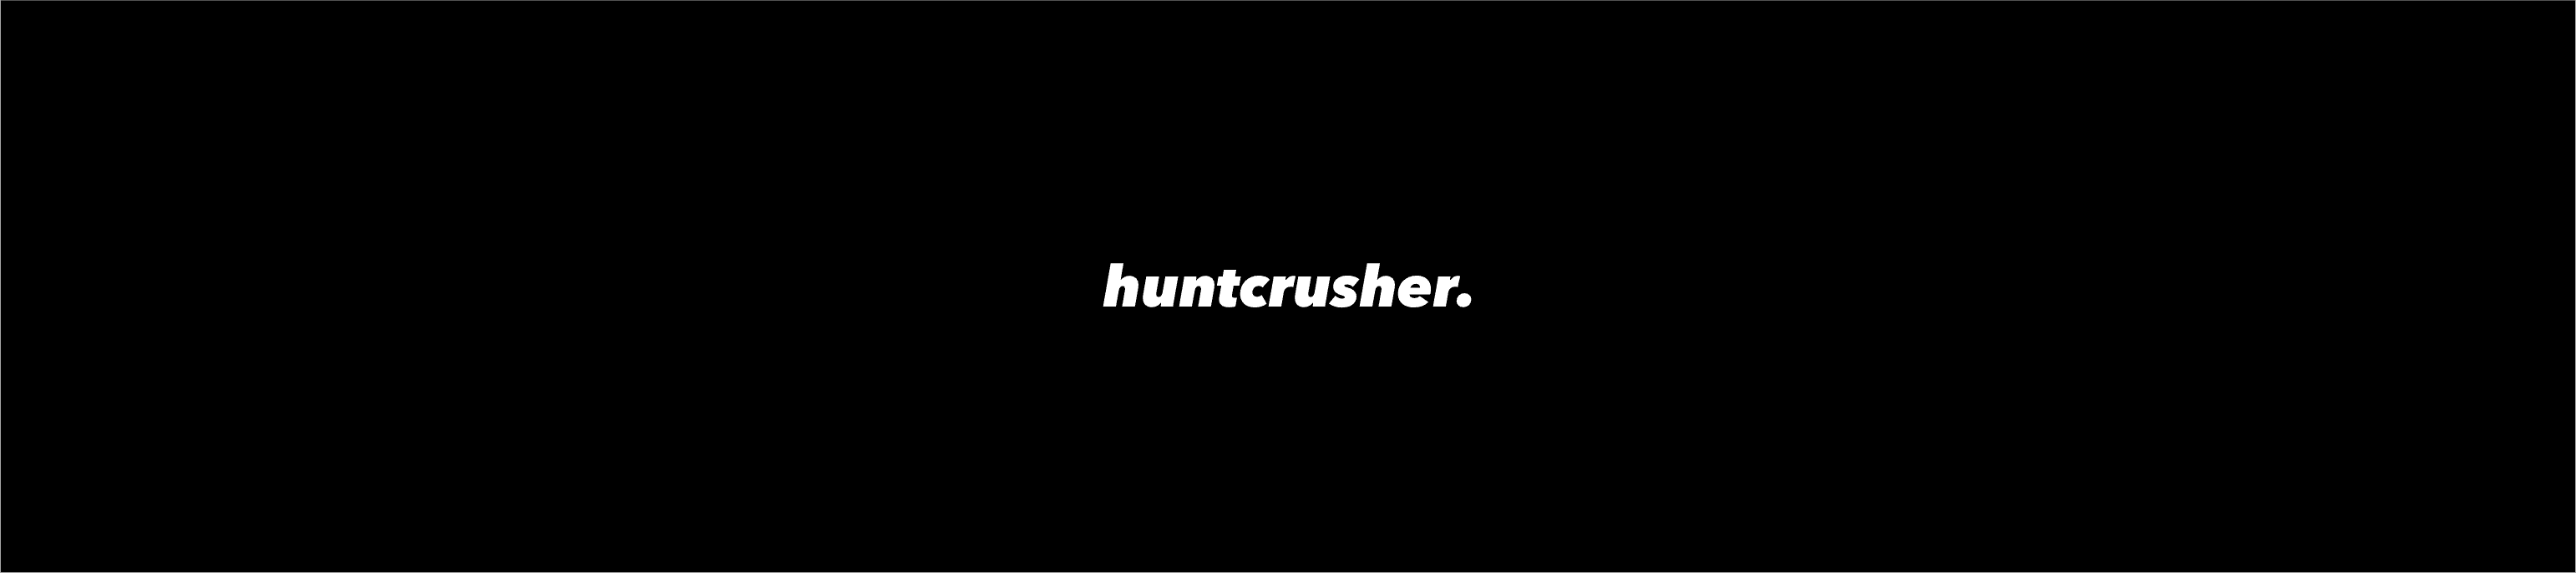 huntcrusher Banner